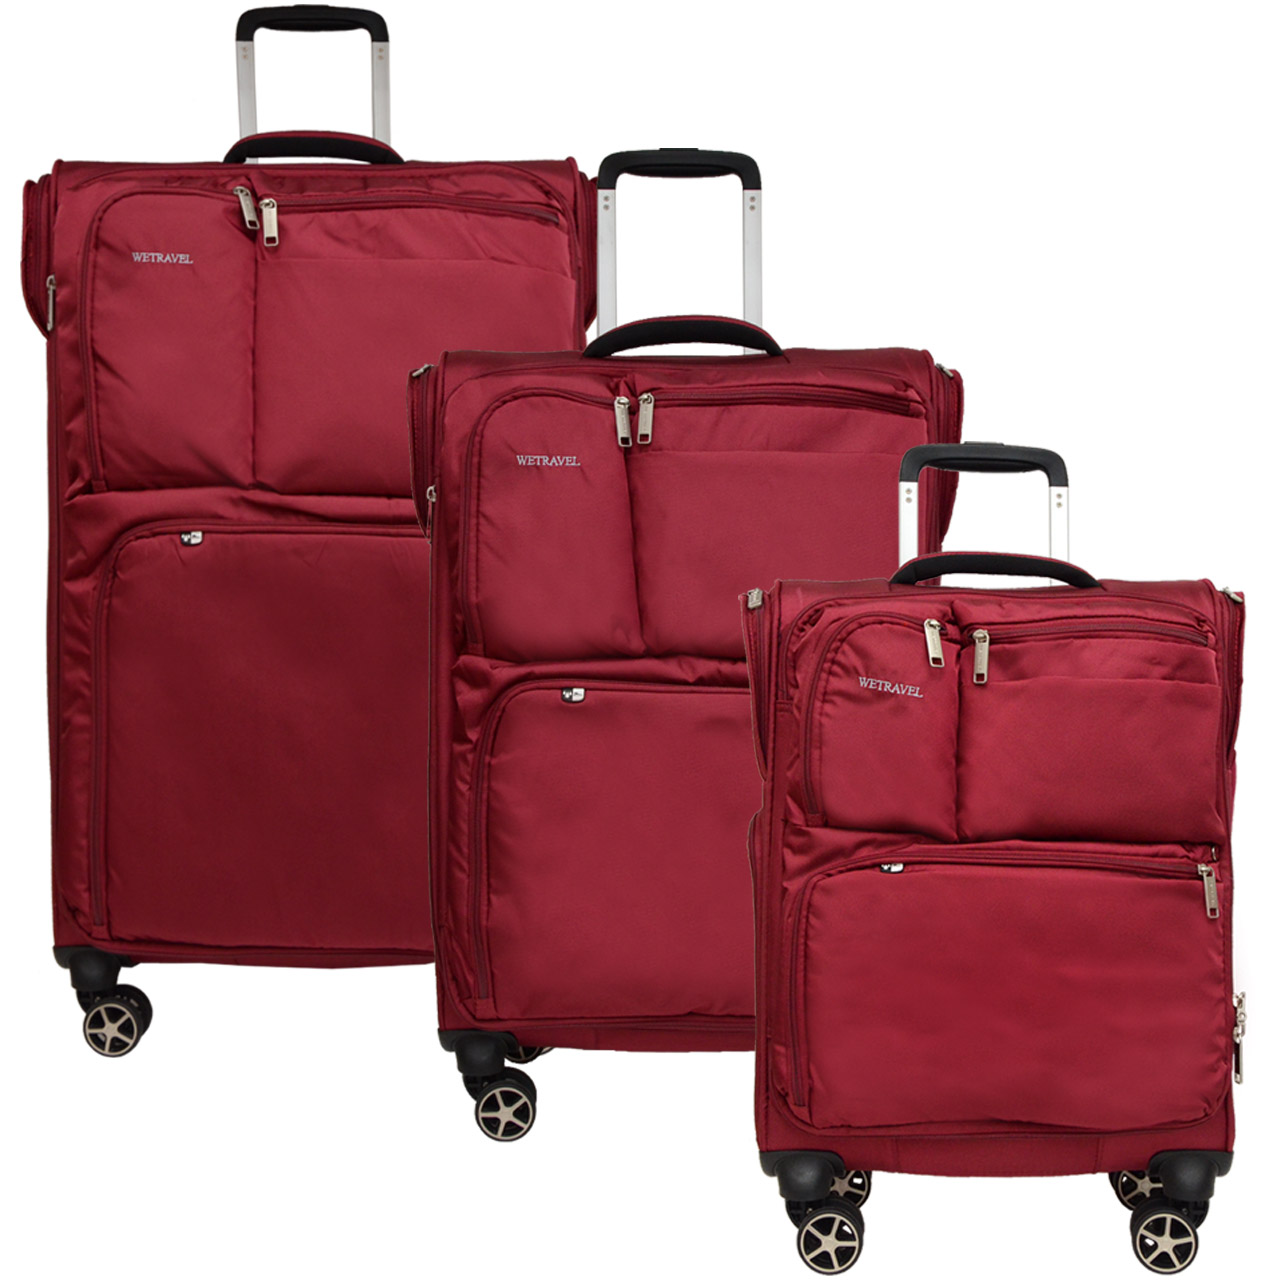 مجموعه سه عددی چمدان وی تراول مدل 700482